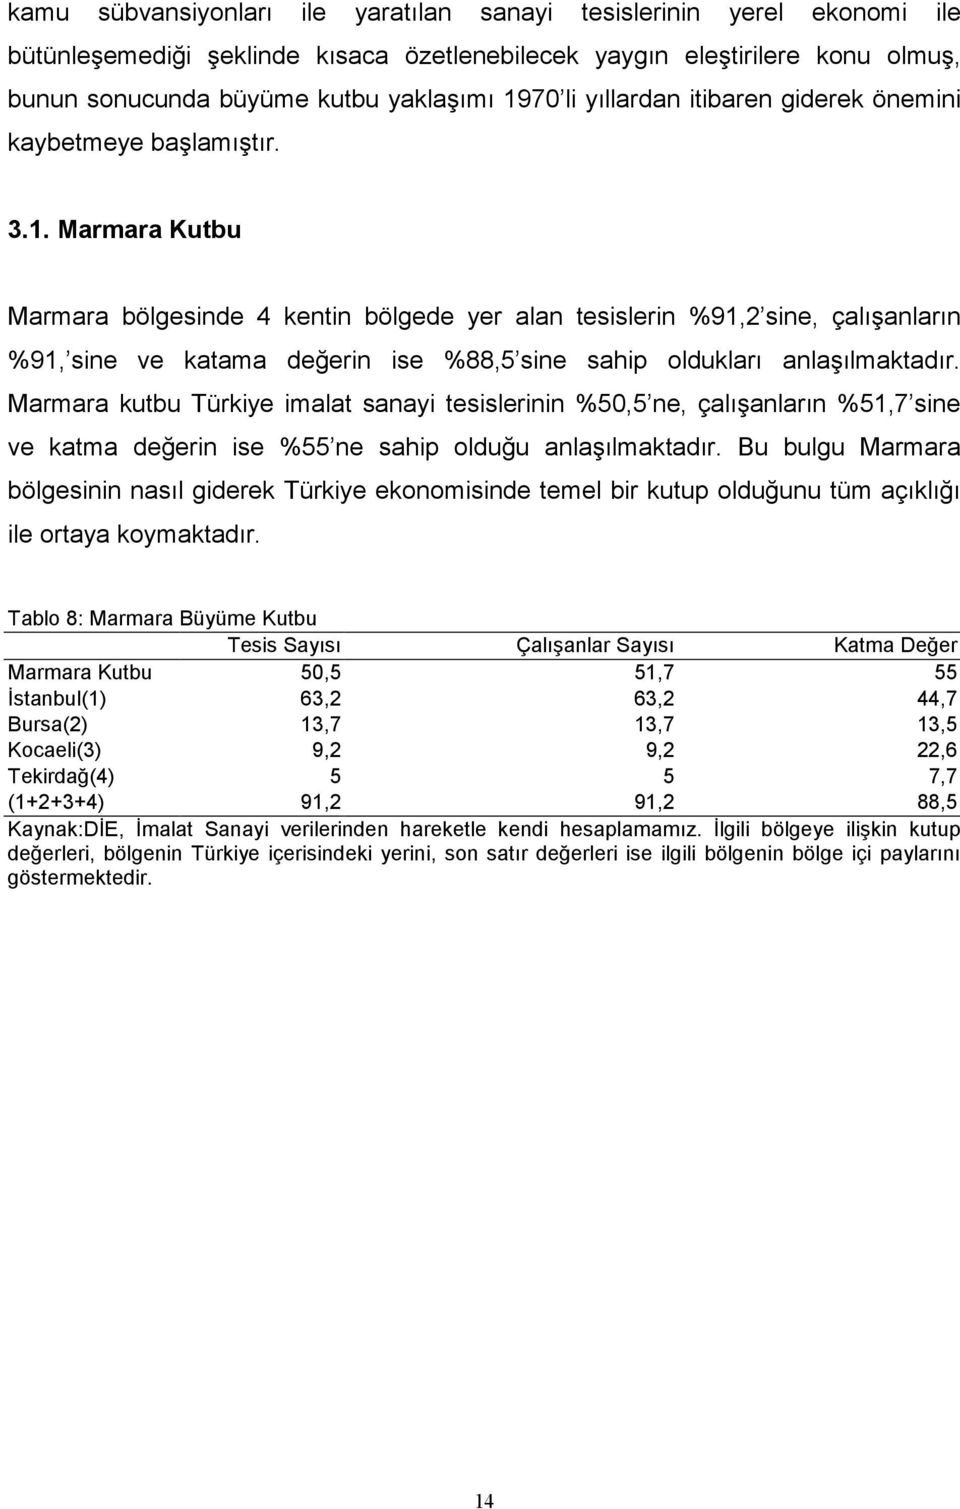 Marmara Kutbu Marmara bölgesinde 4 kentin bölgede yer alan tesislerin %91,2 sine, çalışanların %91, sine ve katama değerin ise %88,5 sine sahip oldukları anlaşılmaktadır.